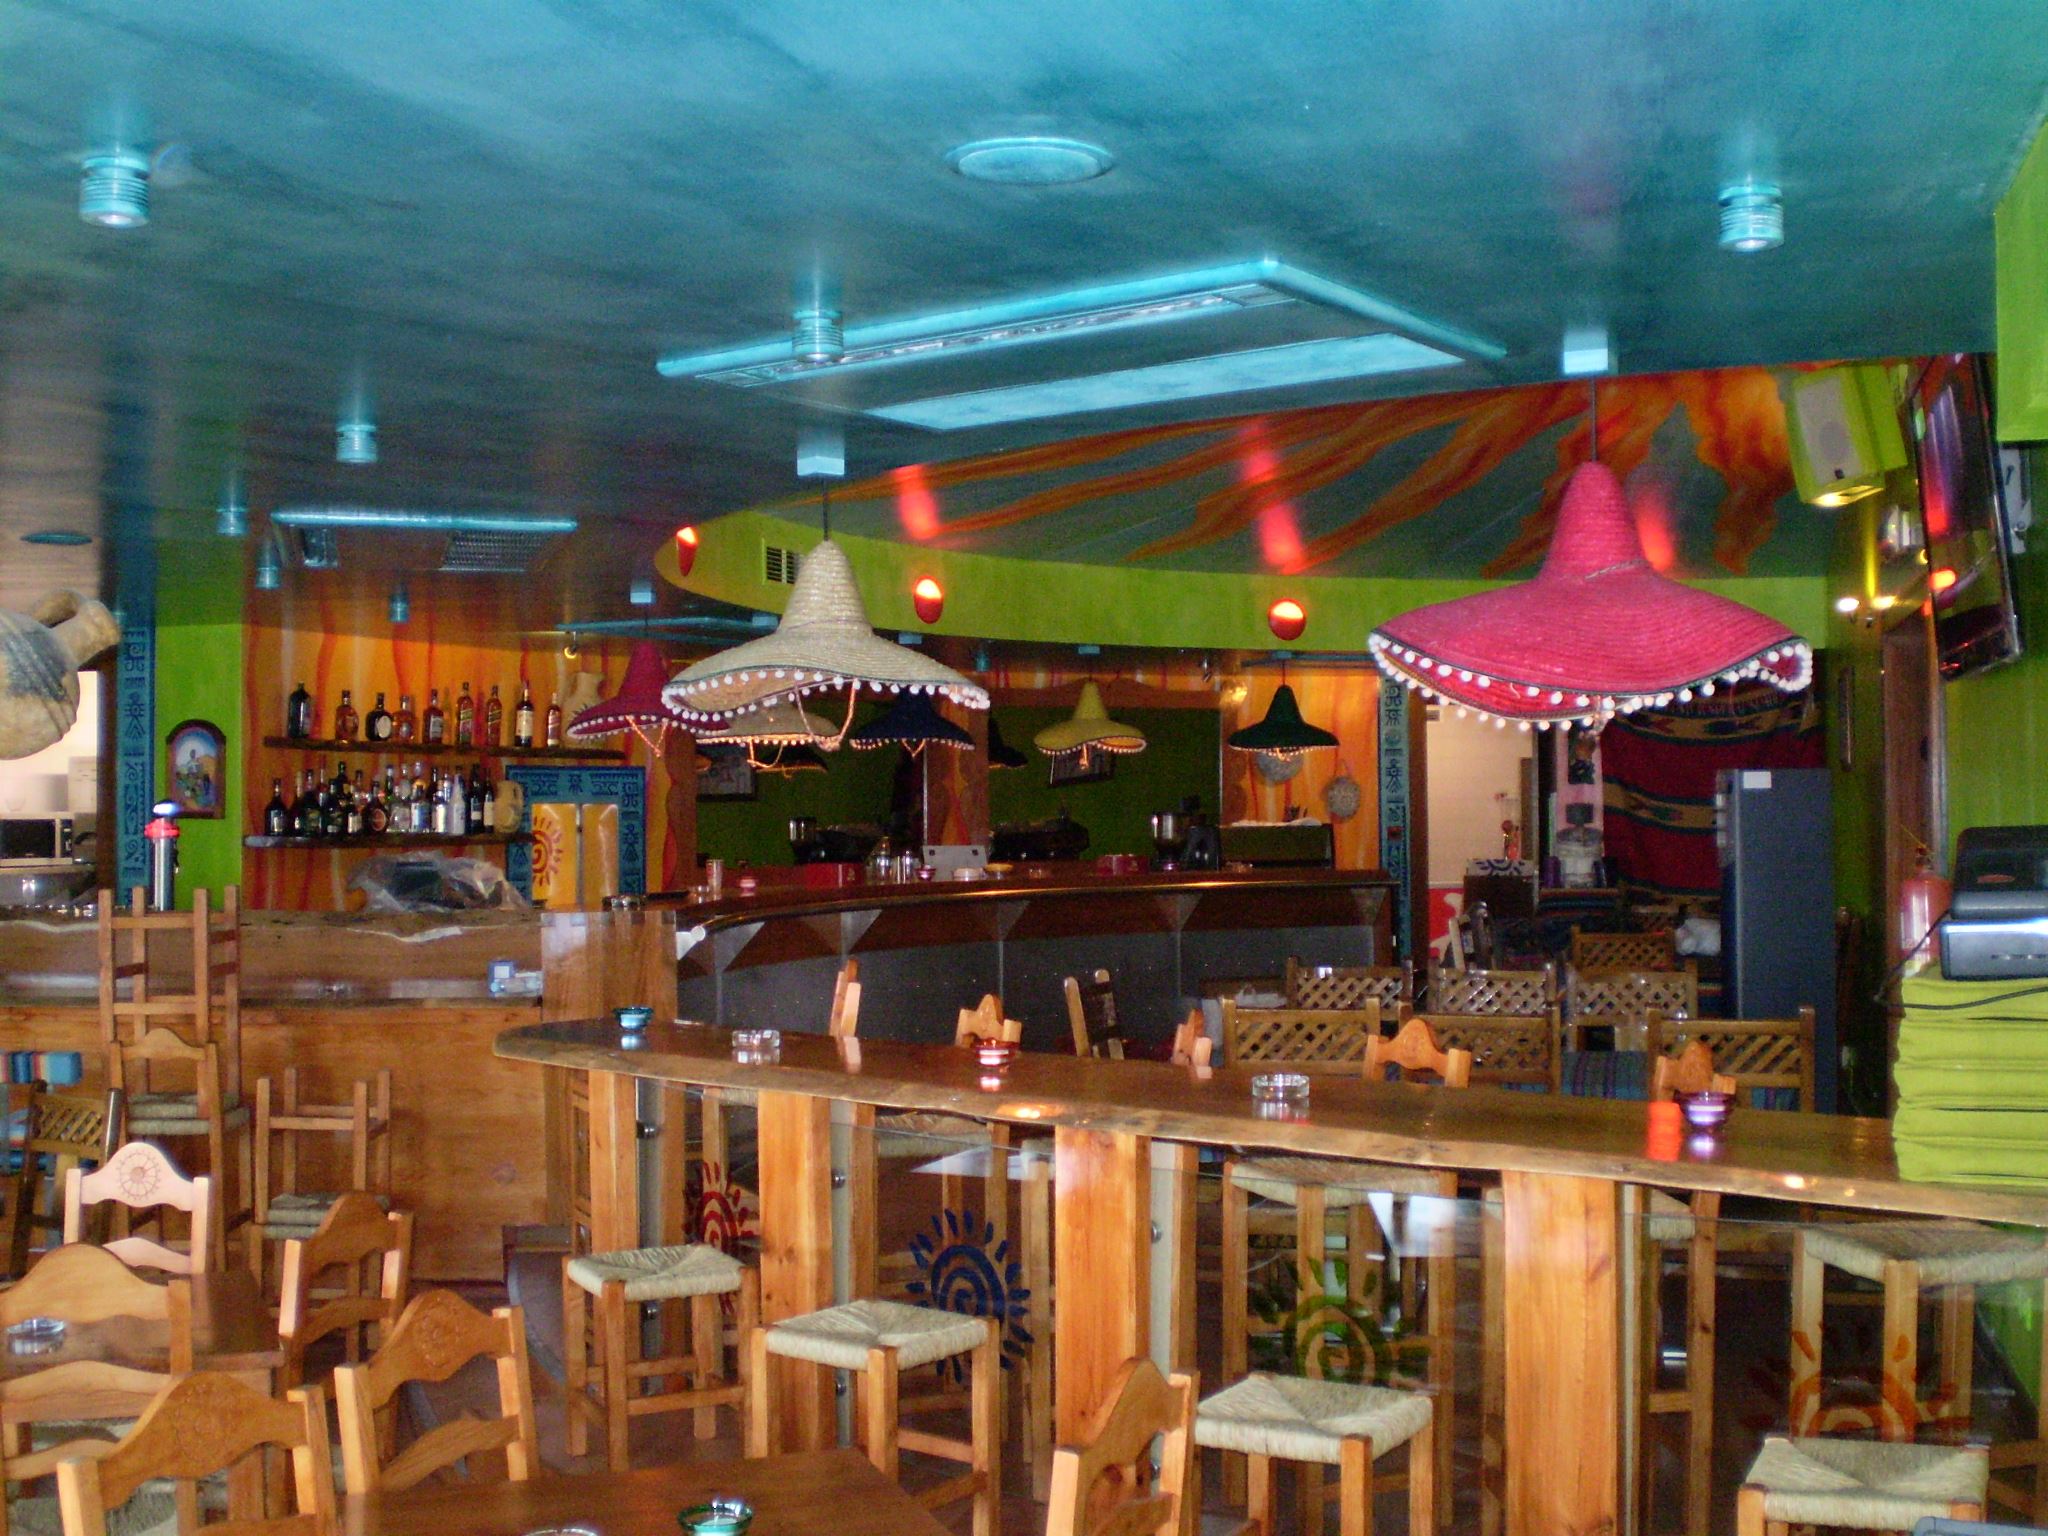 Restaurante Mexicano Arriba